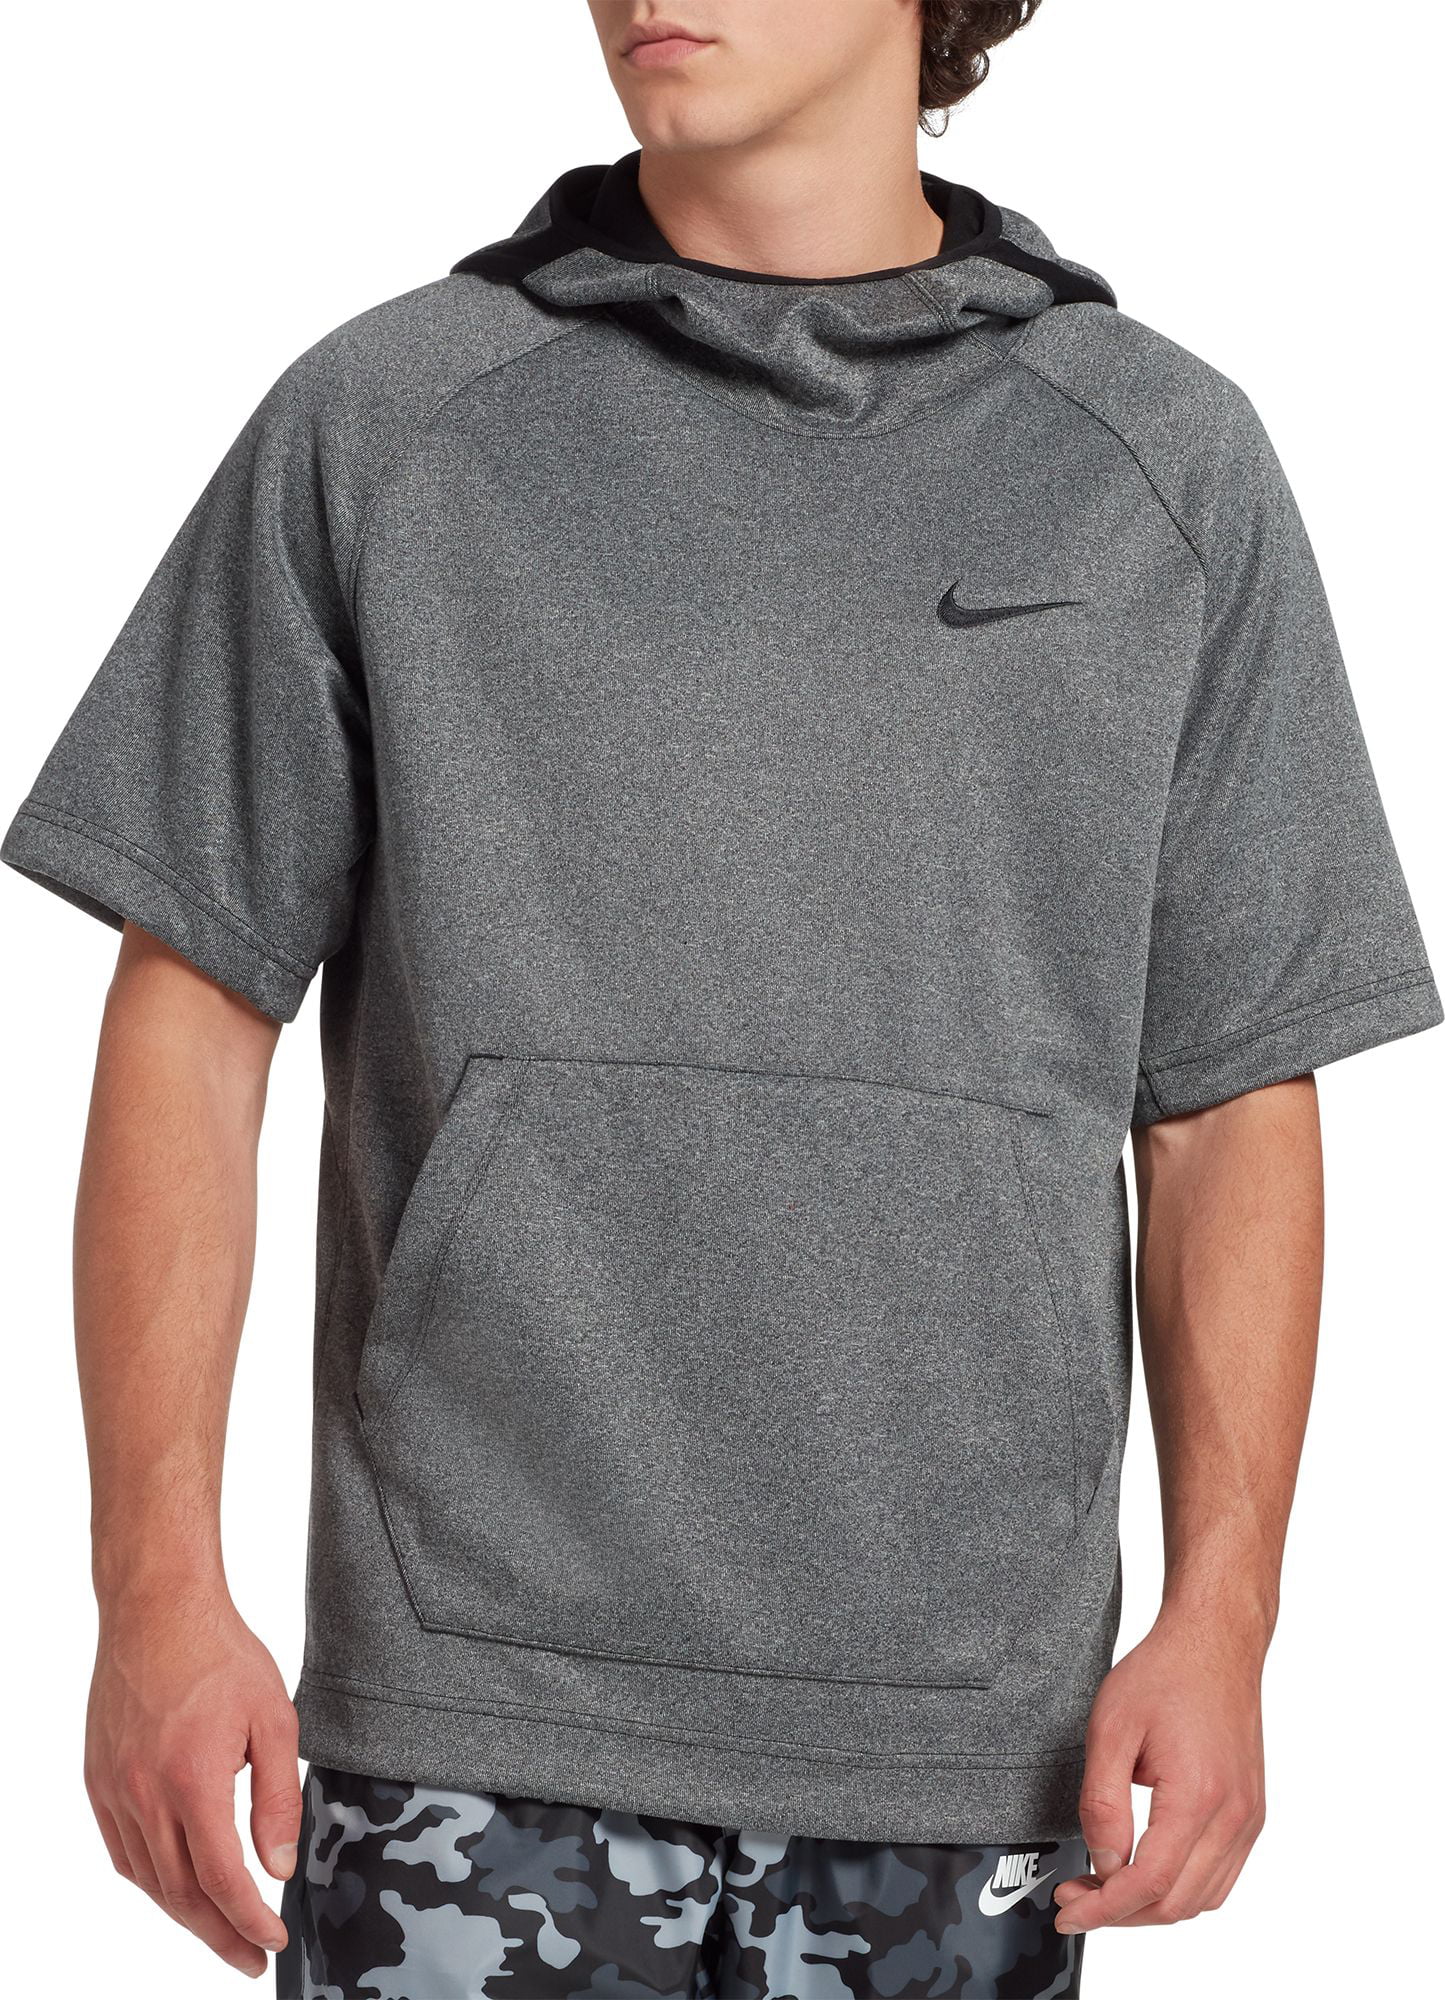 short sleeve dri fit hoodie